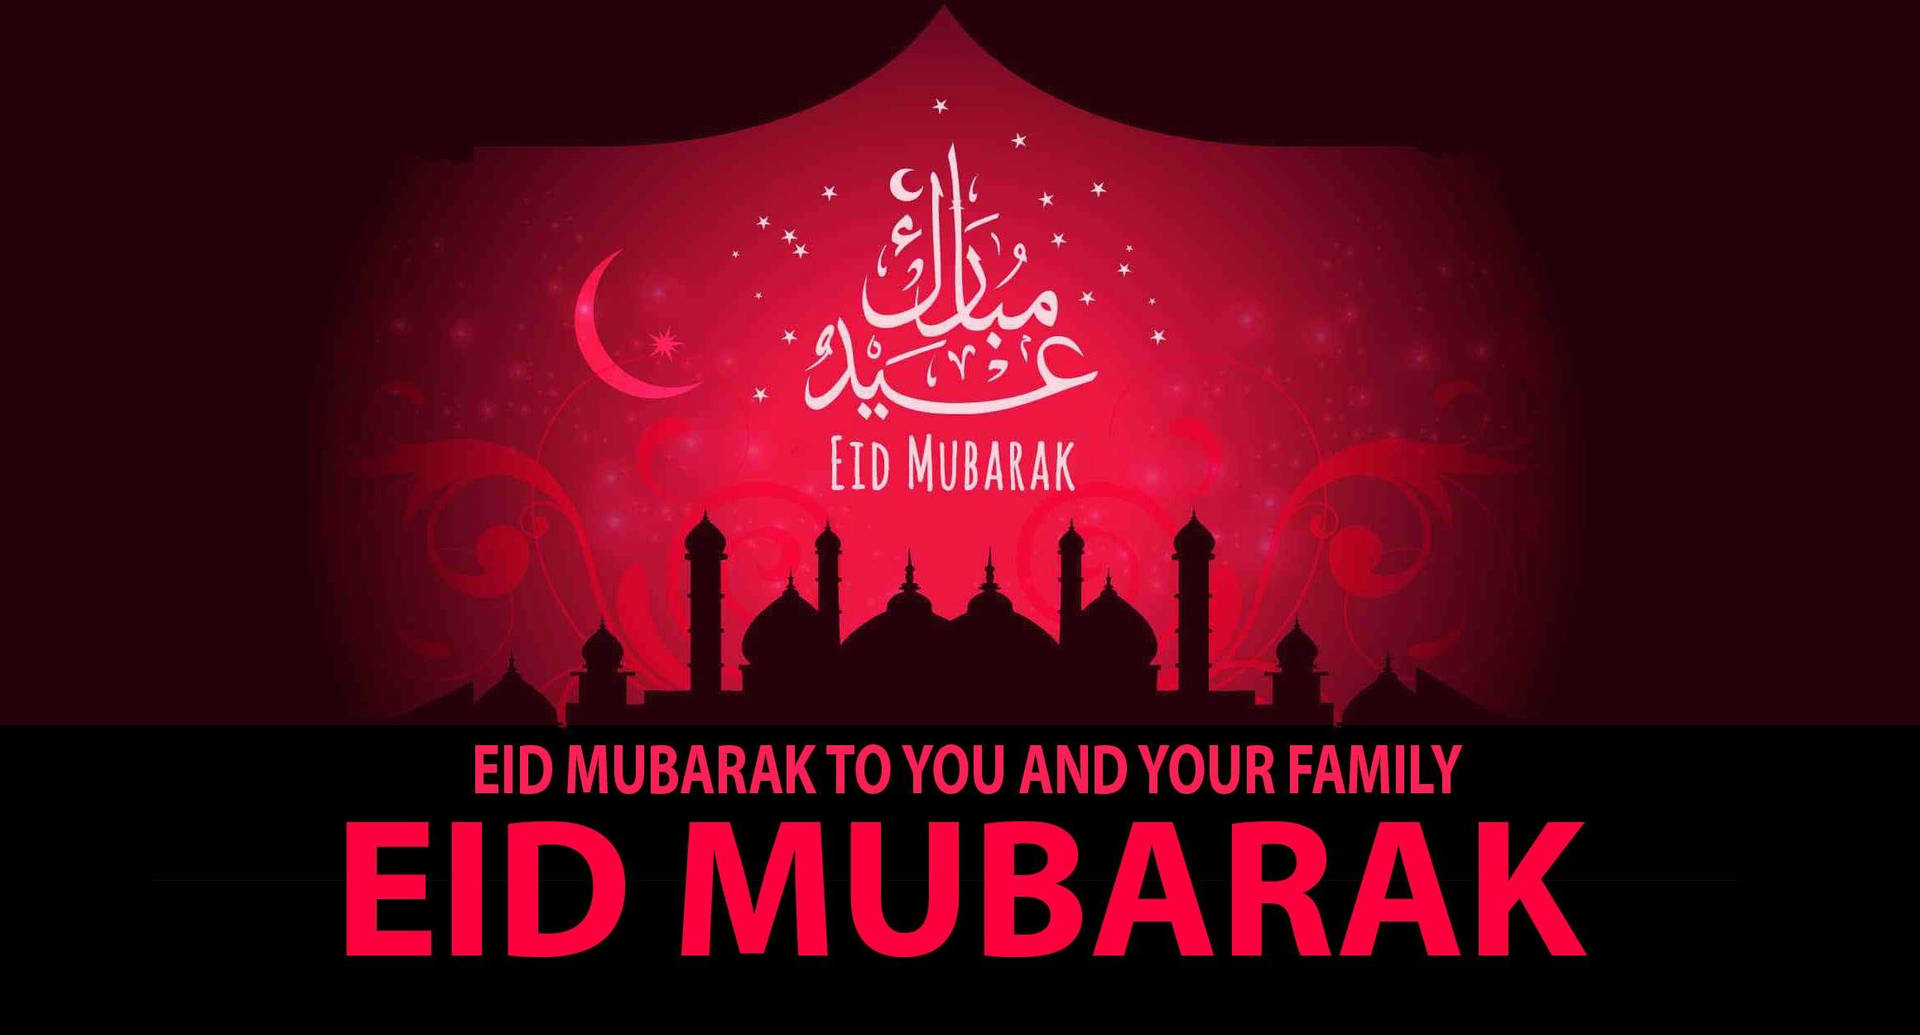 Eidul-adha Mubarak An Dich Und Deine Familie Wallpaper